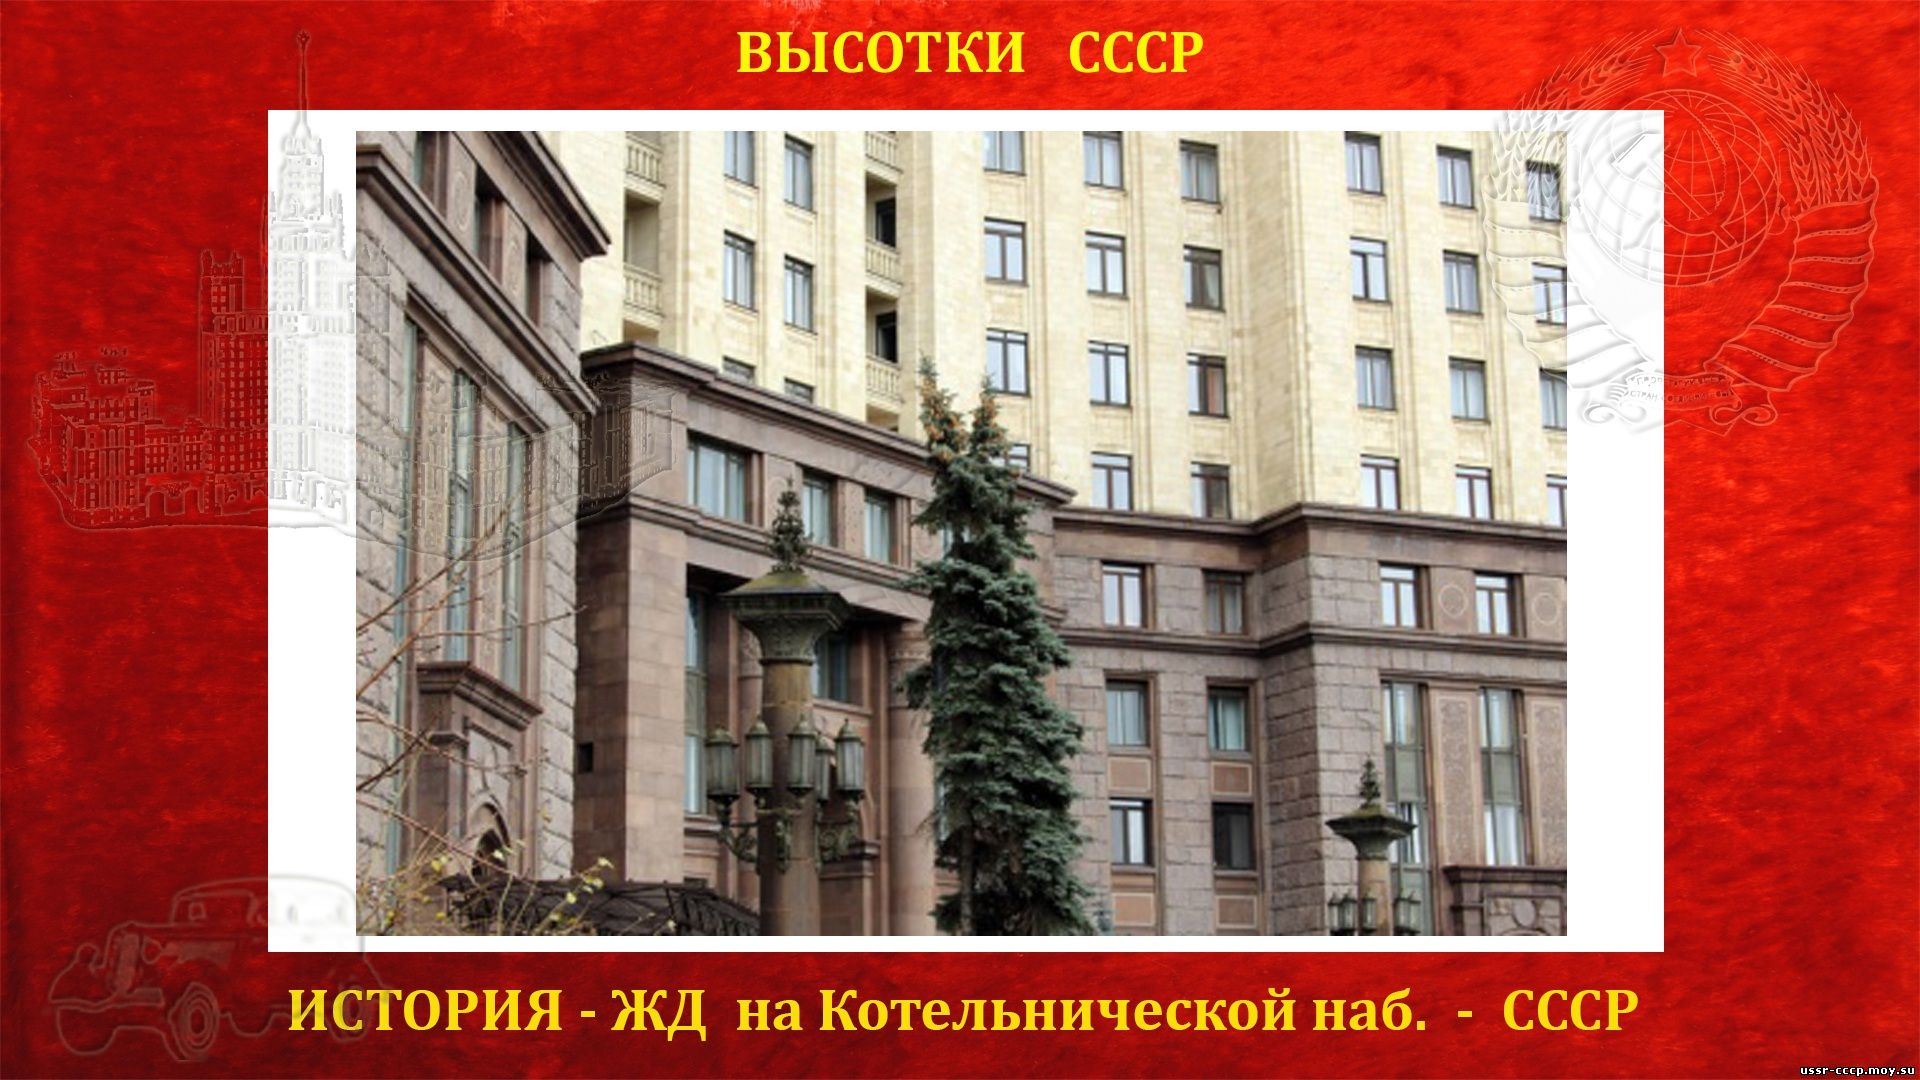 Пять нижних этажей сталинской высотки облицованы гранитом и образуют монументальный цоколь.